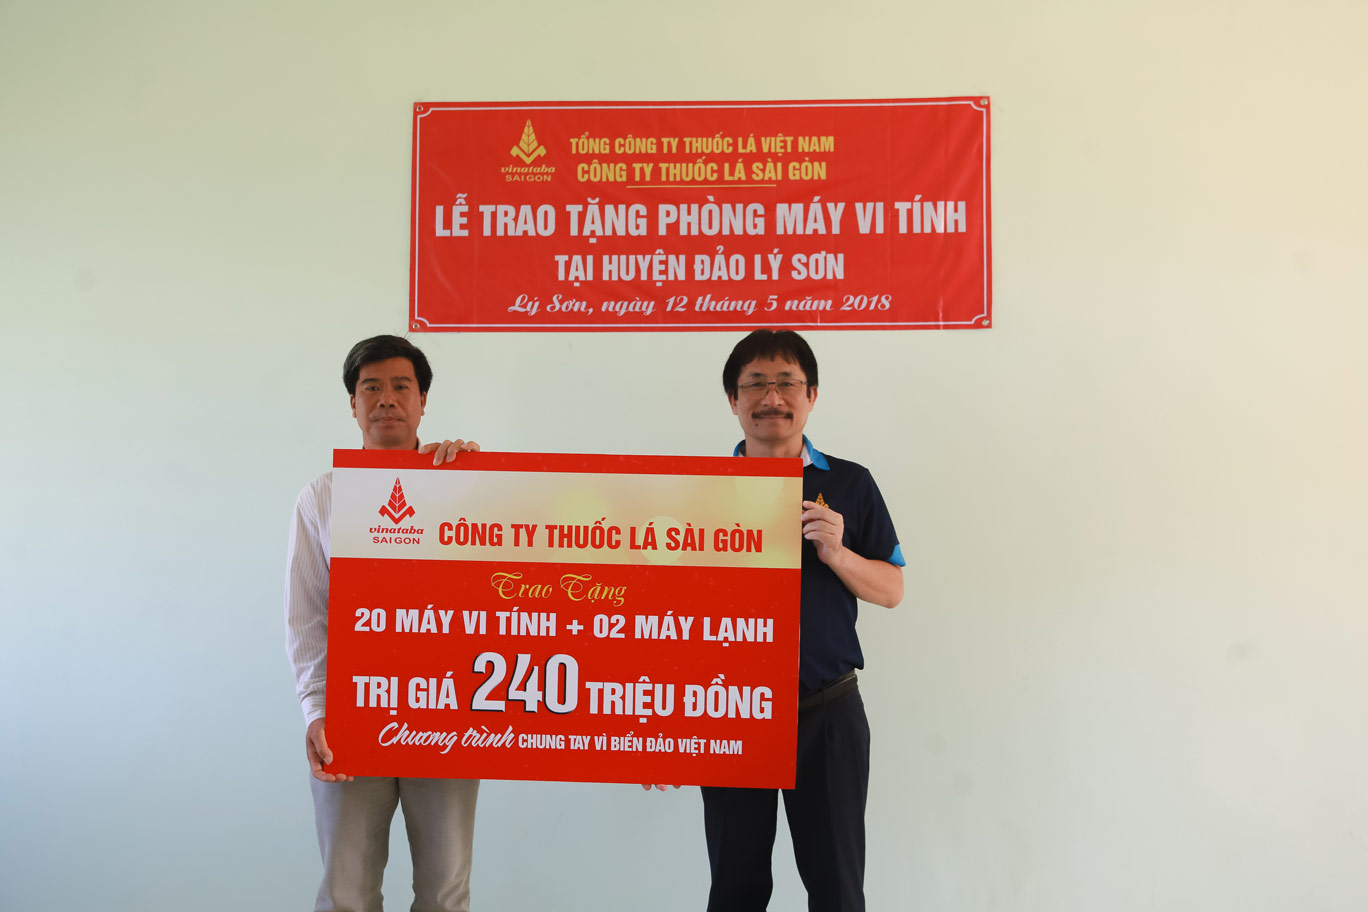 Ông Nguyễn Phương Đông – Chủ tịch HĐTV Cty TLSG trao bảng biểu trưng công trình Phòng máy vi tính cho đại diện trường THCS An Hải